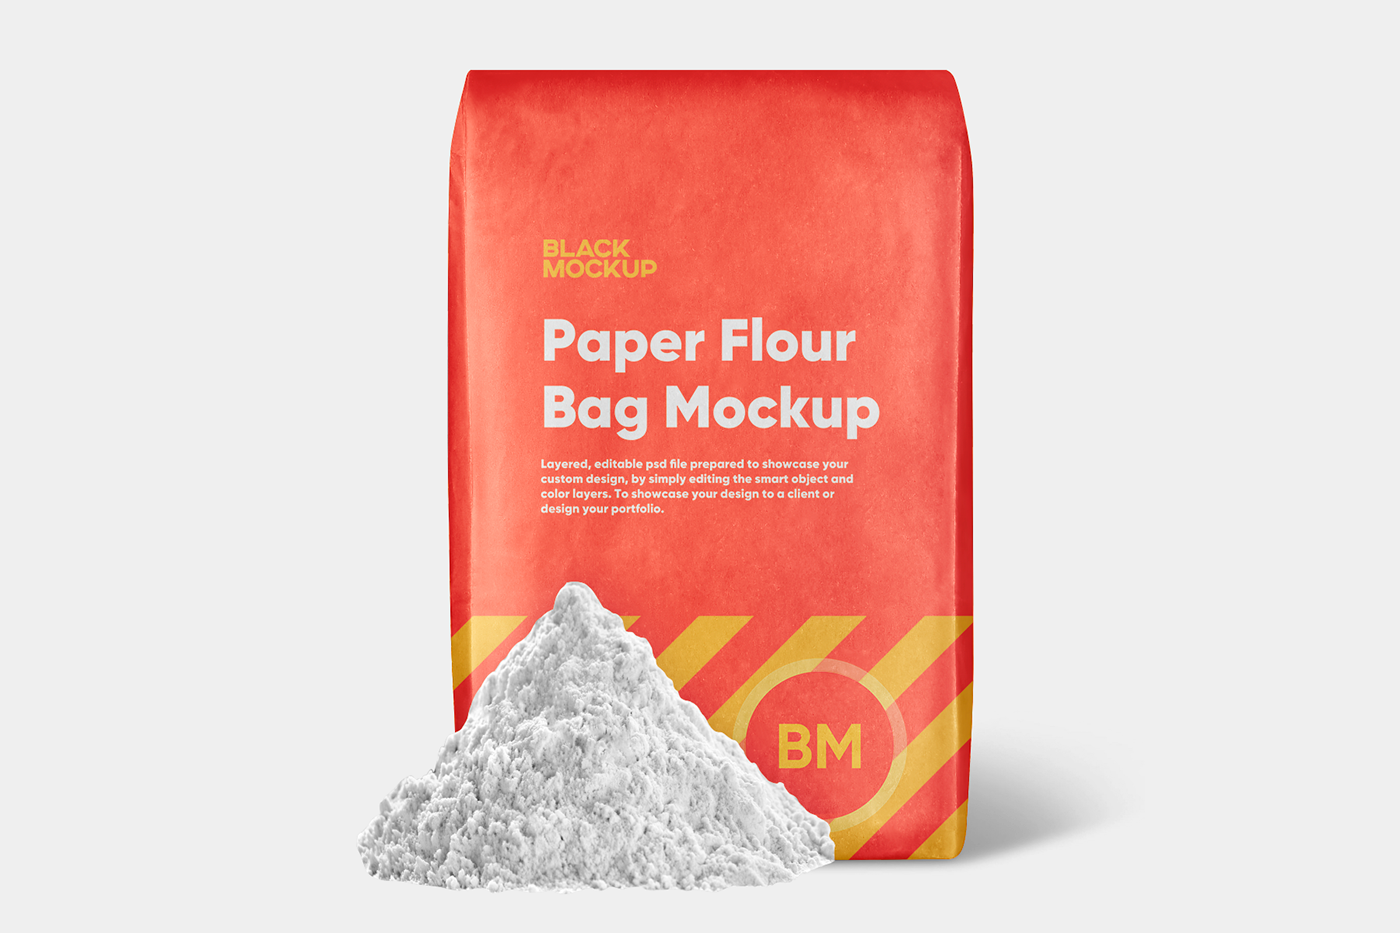 bag craft mockup bag mockup flour packing mockup paper bag mockup Paper Flour Bag Mockup